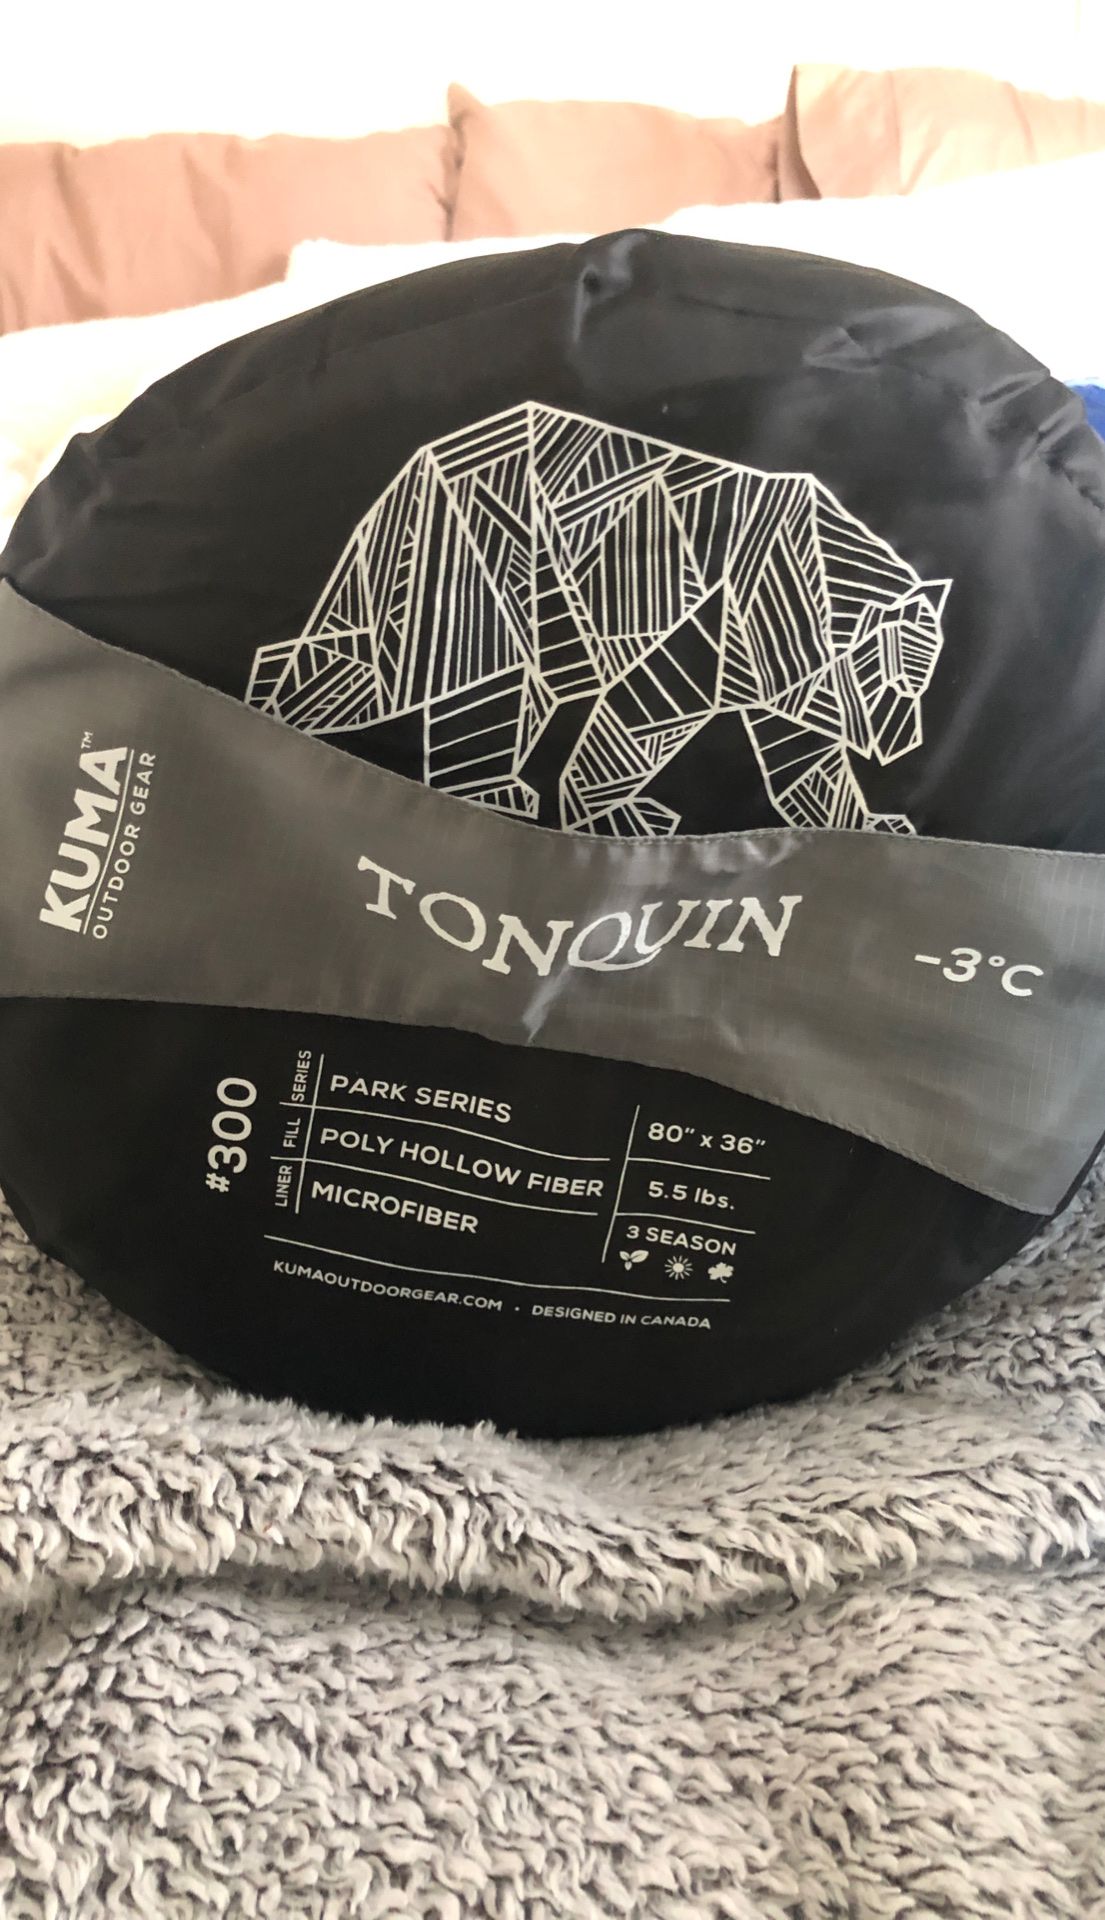 KUMA outdoor gear sleeping bag